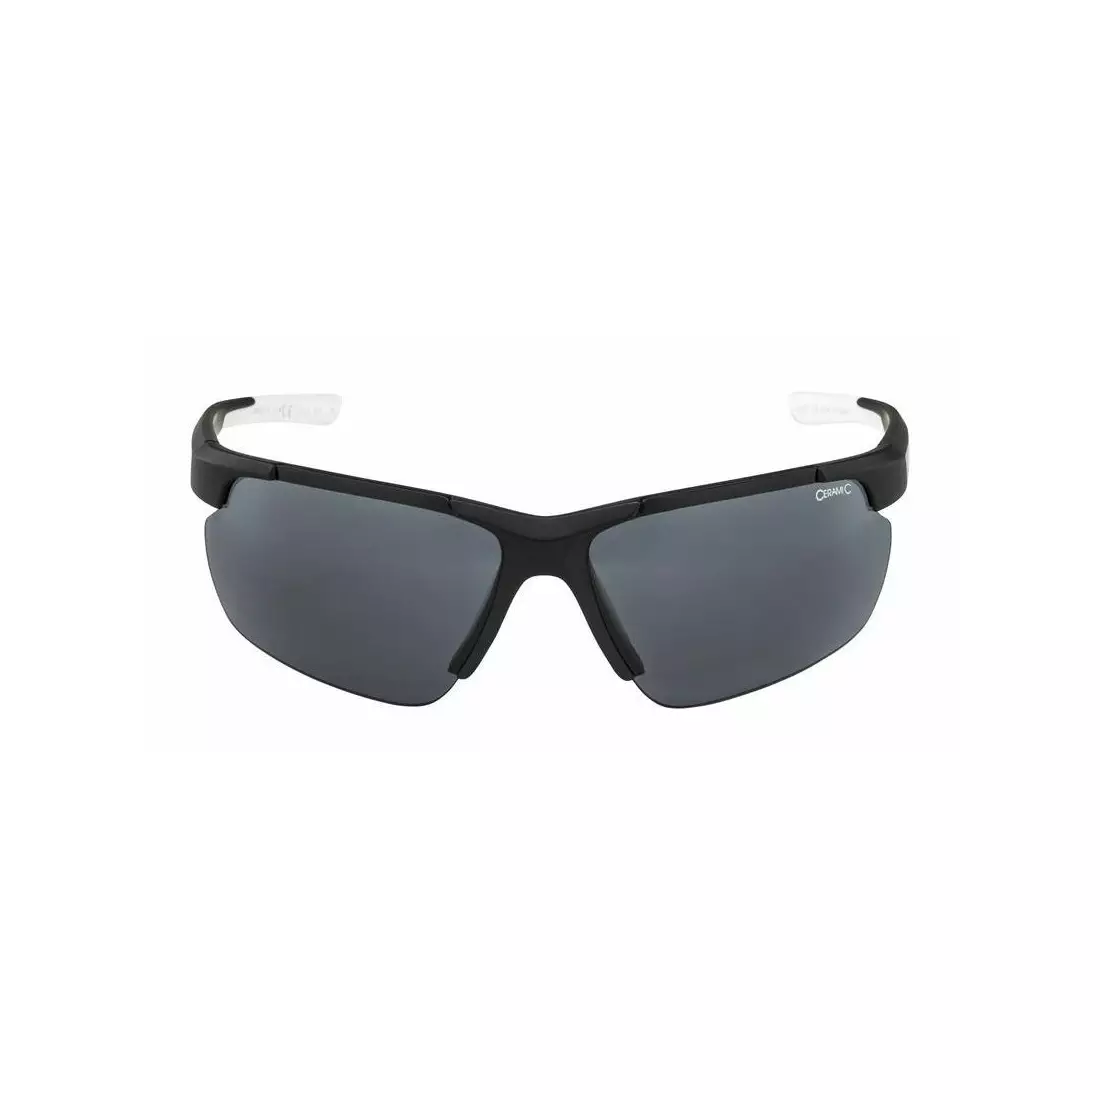 ALPINA Sportbrille DEFFY HR BLACK  S3 black matt-white A8657431